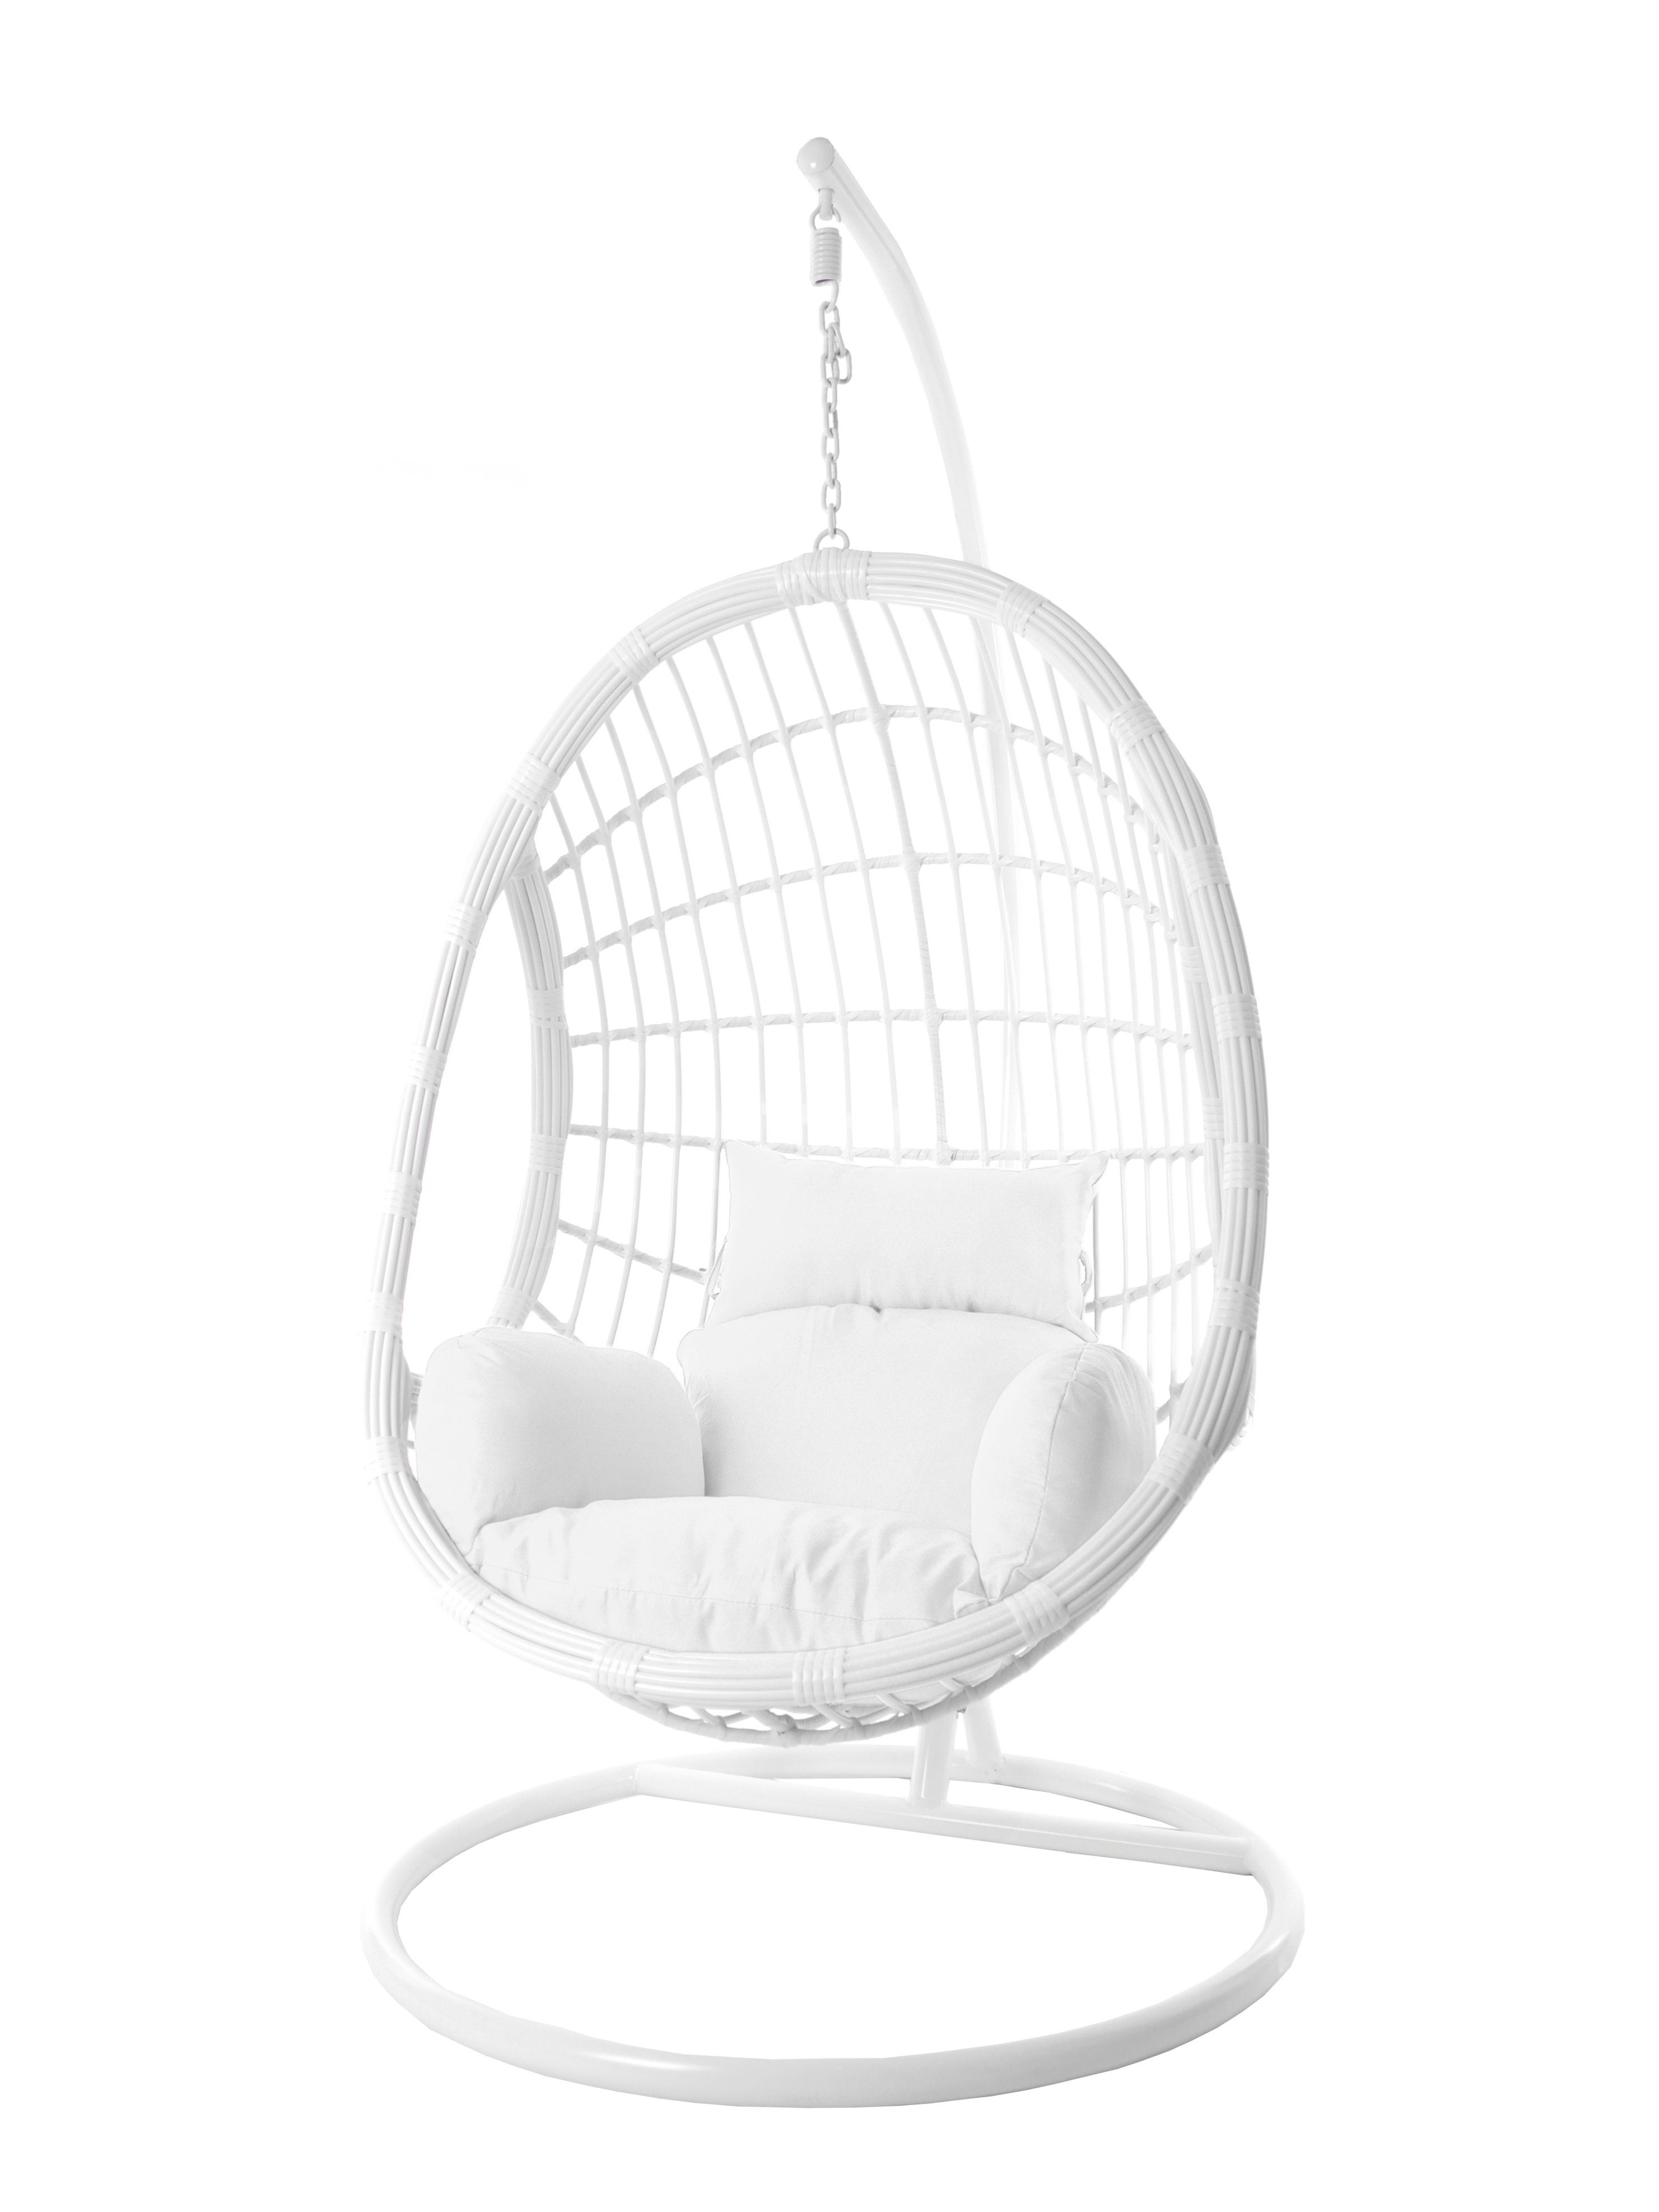 KIDEO Hängesessel Hängesessel Chair, Loungemöbel PALMANOVA Loungesessel Gestell in moderner Kissen, weiß, Hängesessel und weiß, Swing mit